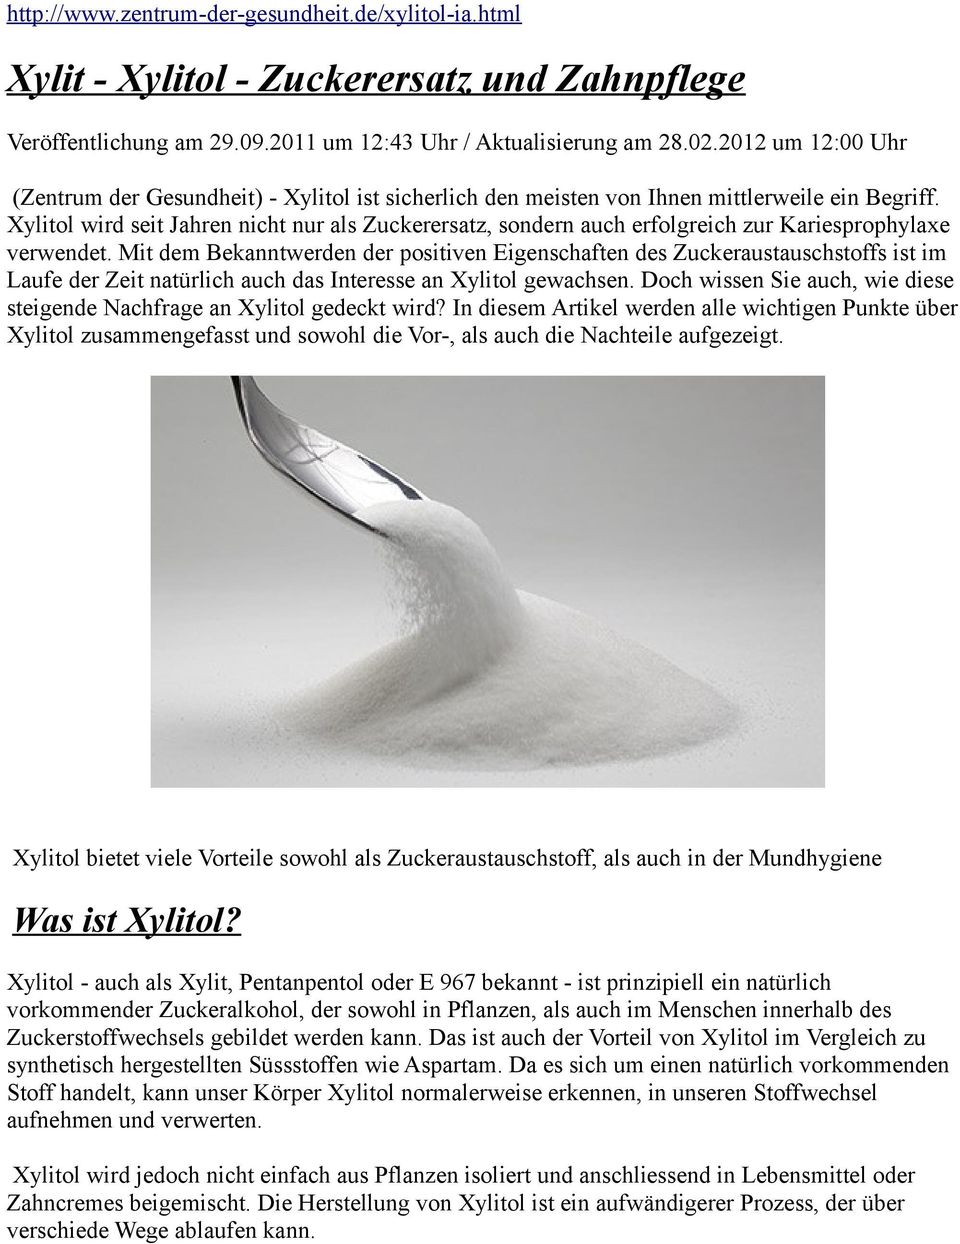 Xylitol wird seit Jahren nicht nur als Zuckerersatz, sondern auch erfolgreich zur Kariesprophylaxe verwendet.